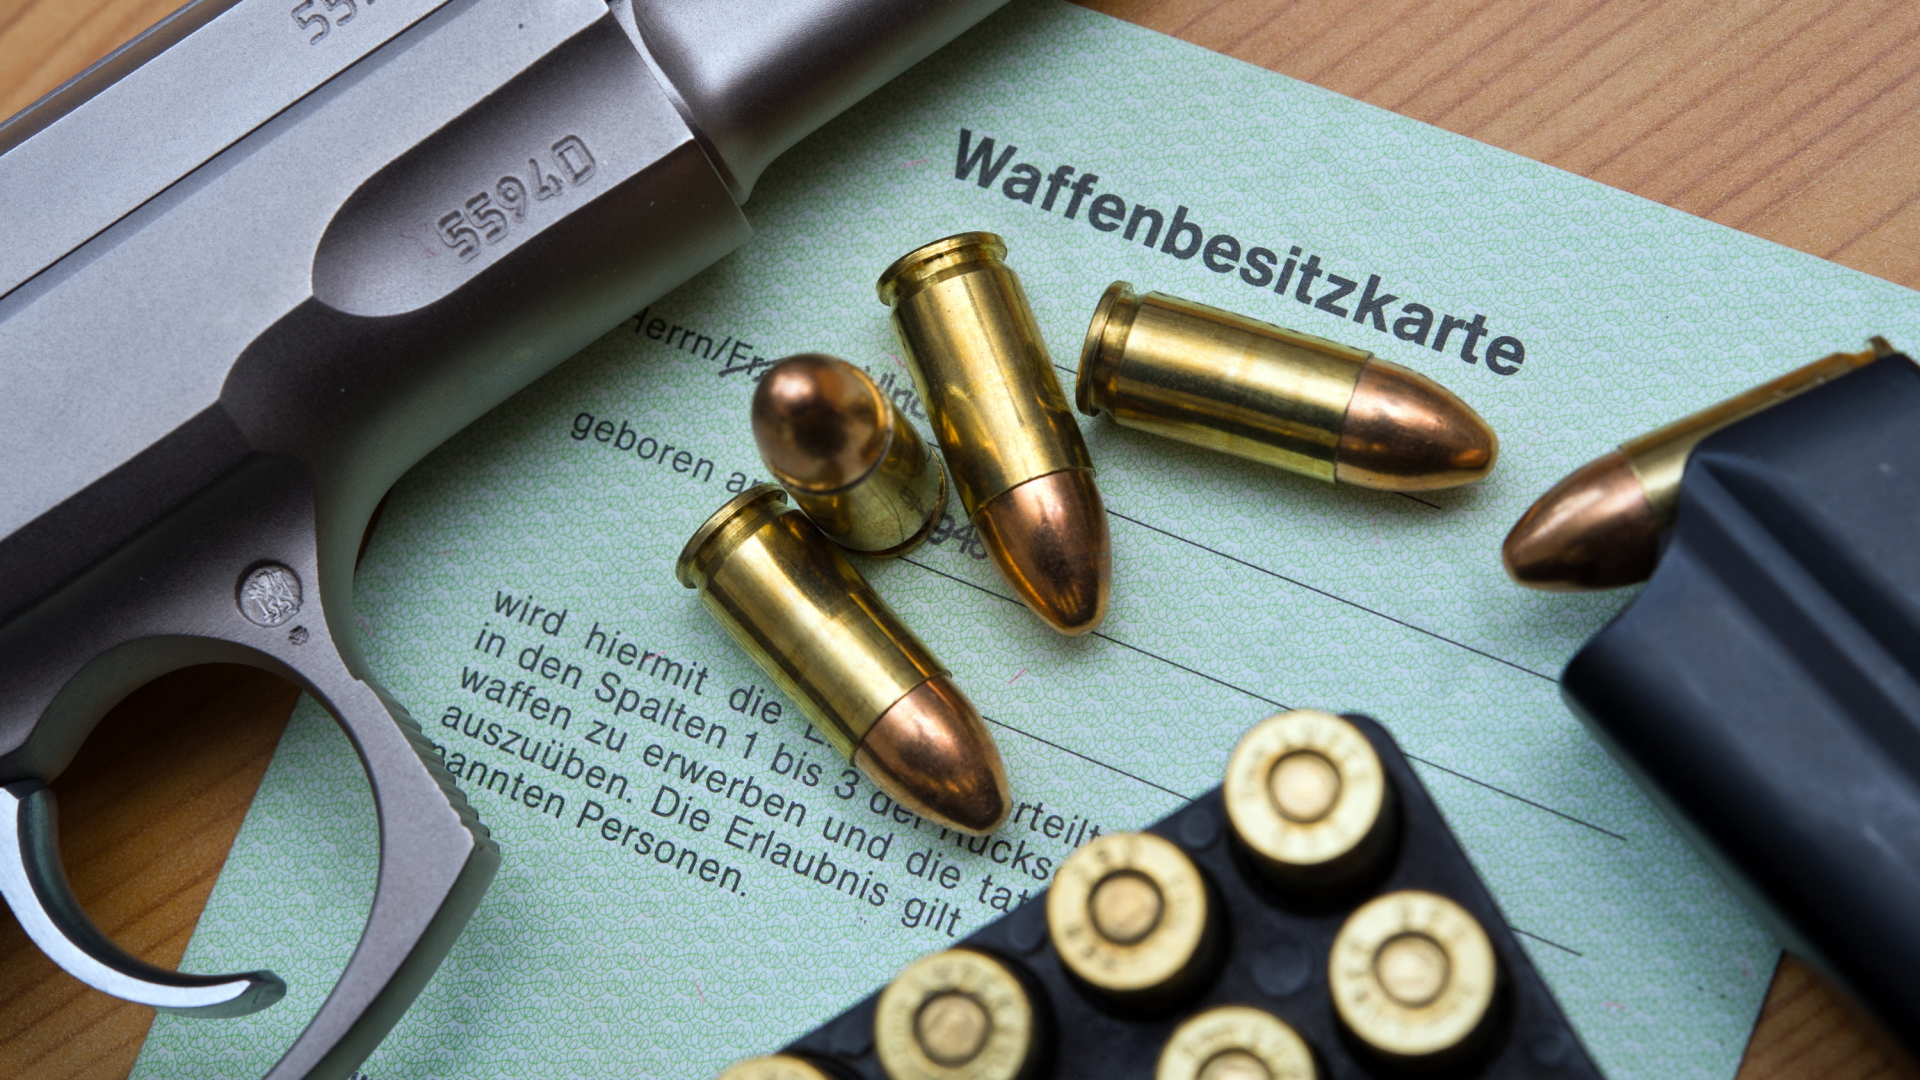 Eine Kaliber 9 mm Pistole, Patronen und ein Magazin liegen auf einer Waffenbesitzkarte. | Bildquelle: dpa